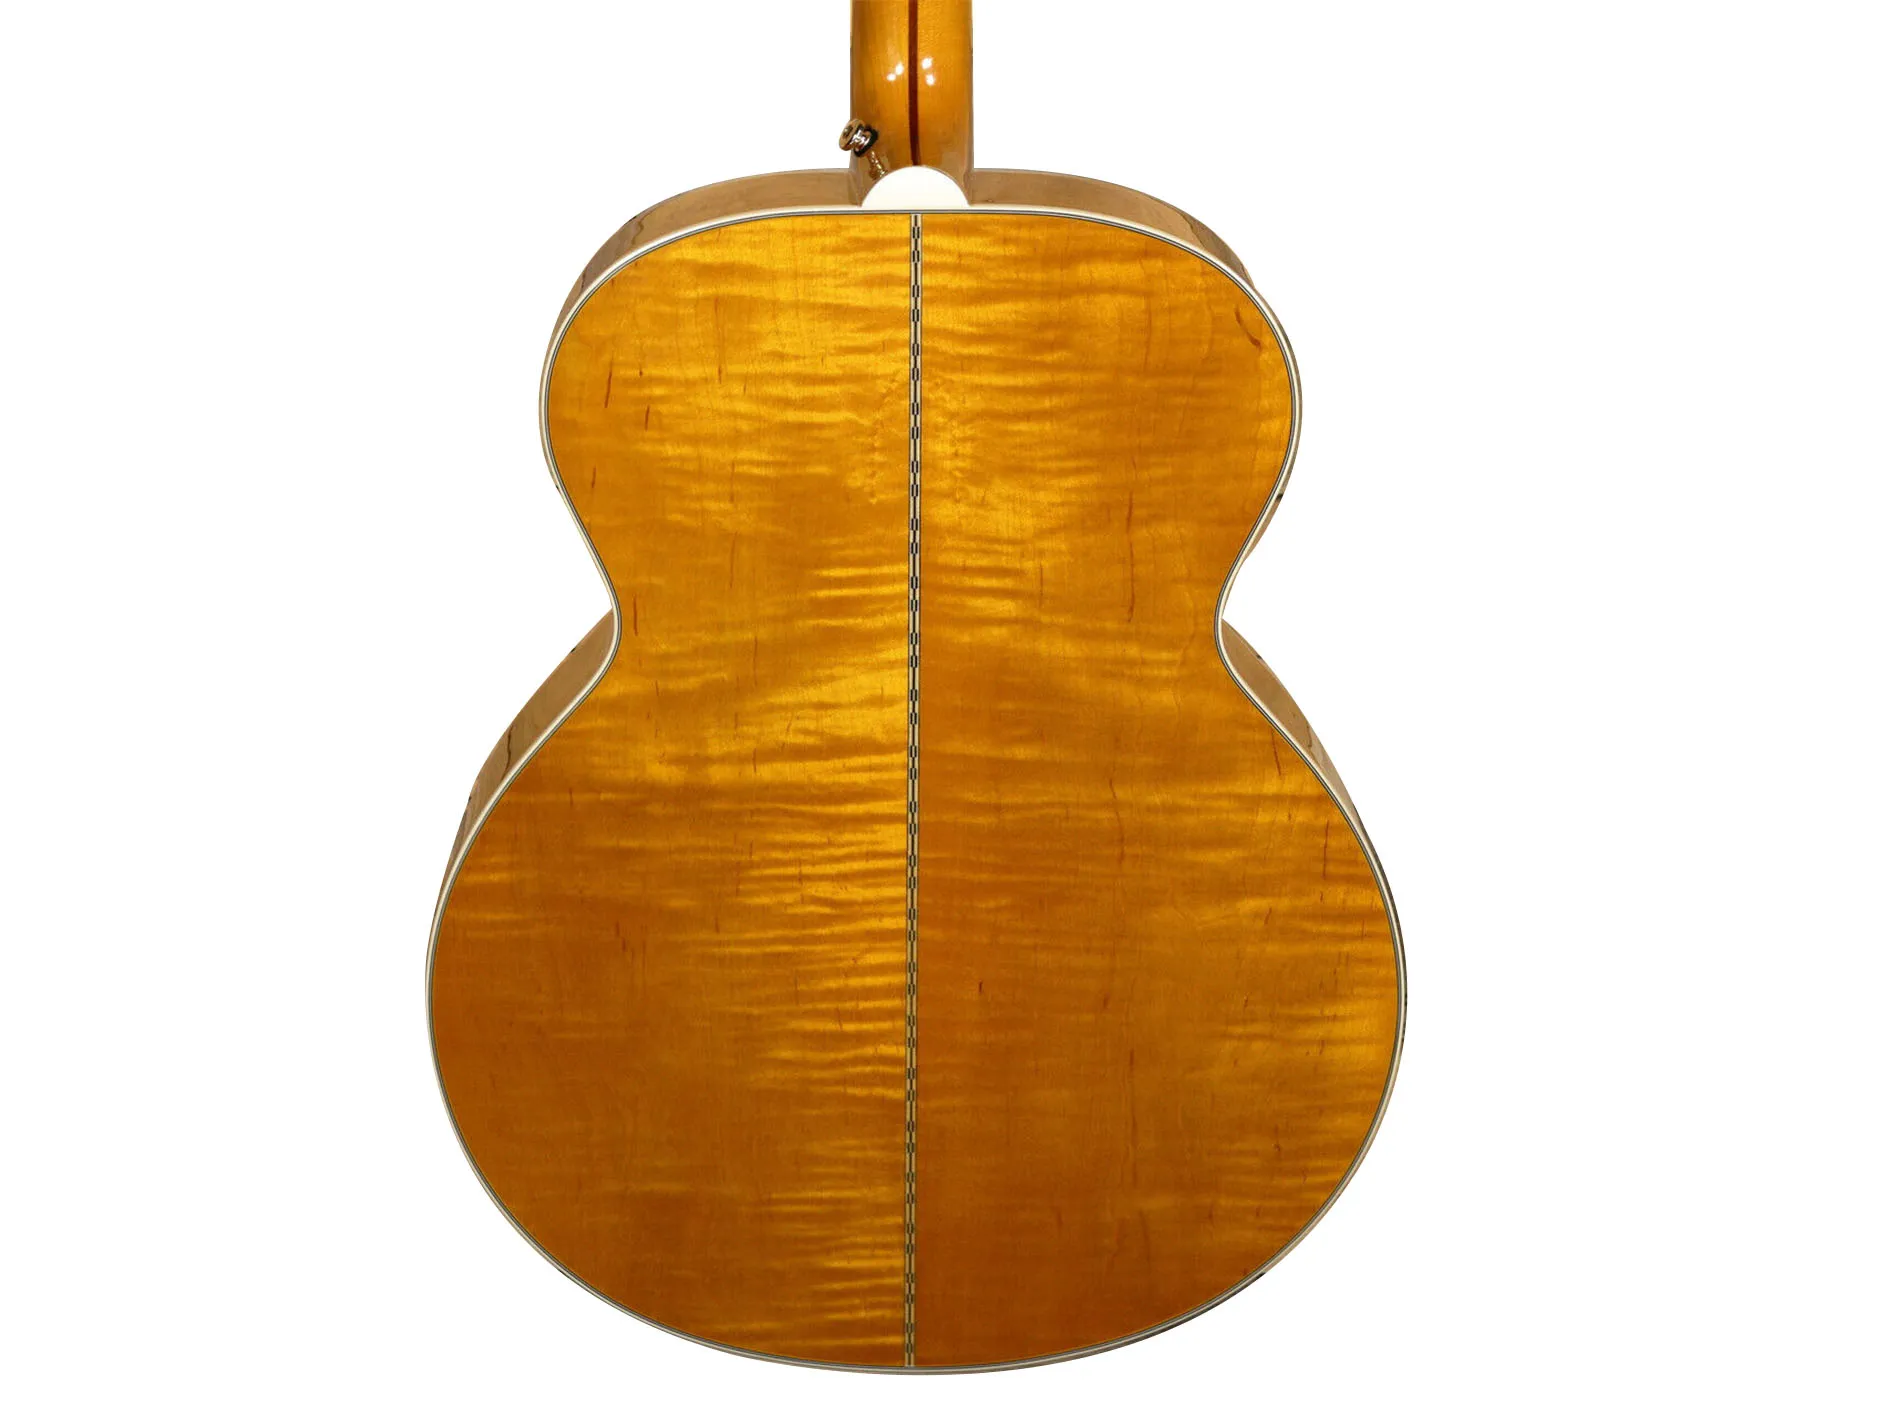 J200 akustisk gitarr åldrad antik naturlig glans utmärkt co gitarr